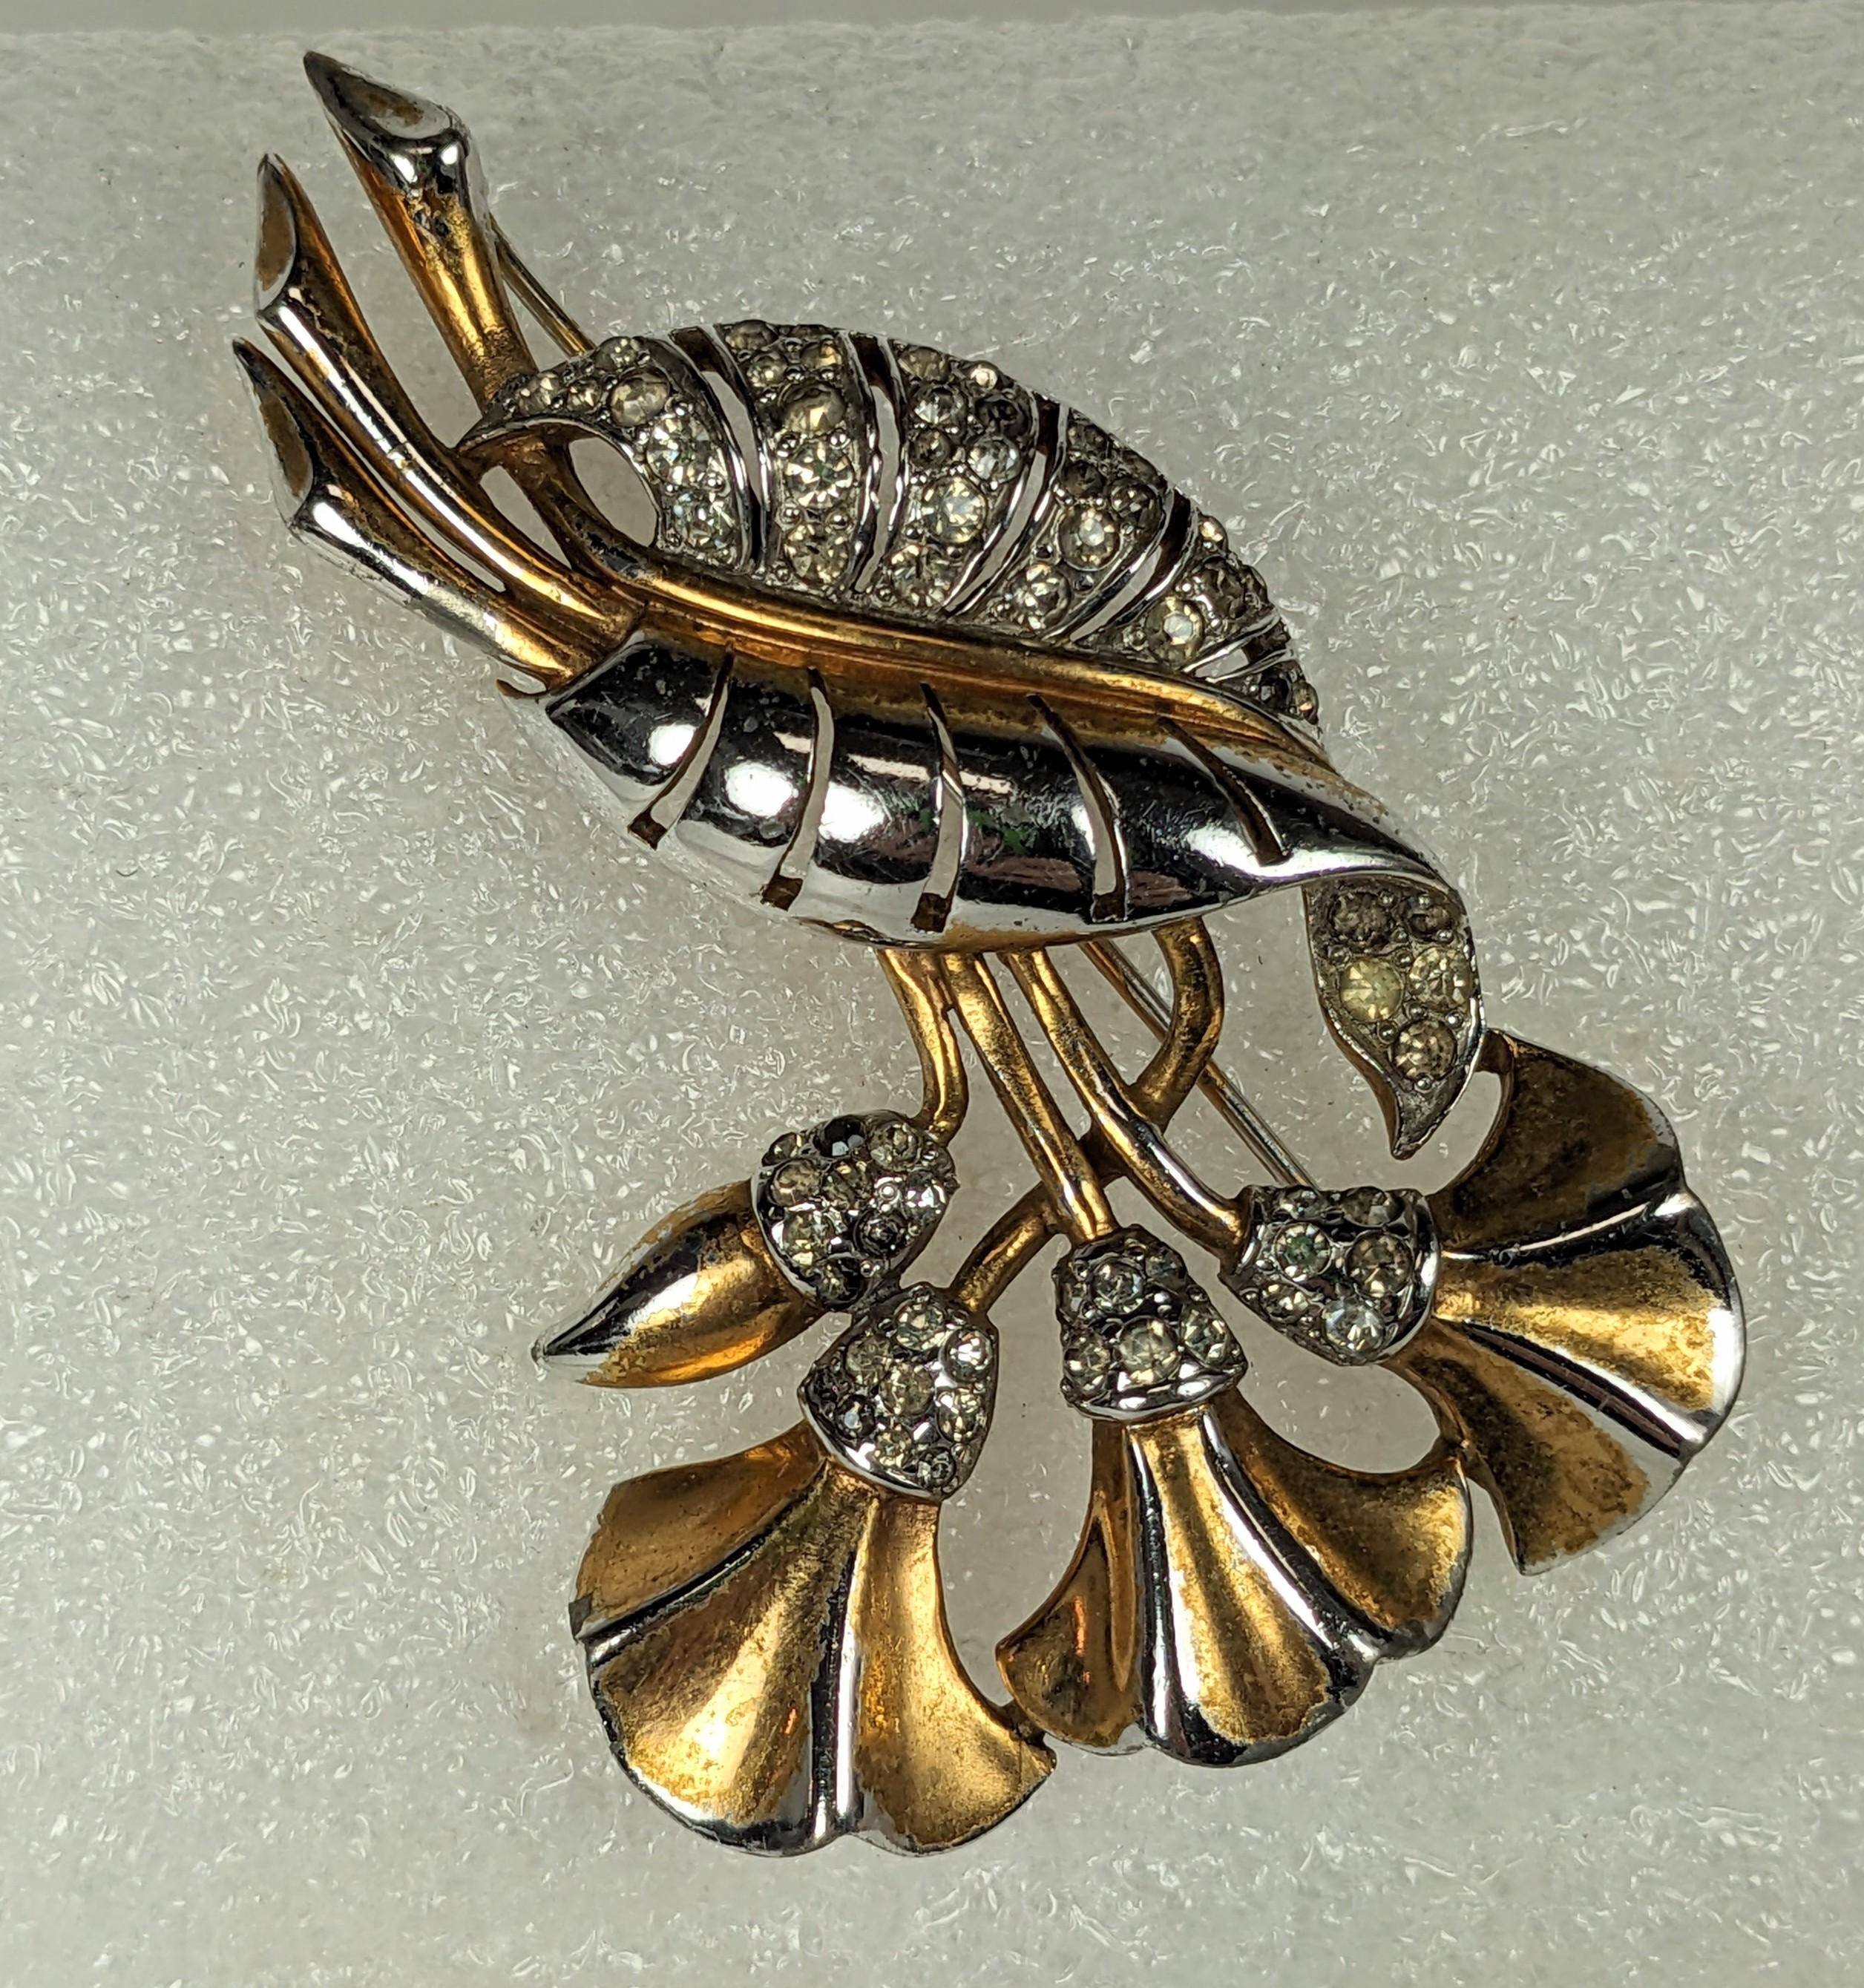 Broche Marcel Boucher Early Lily des années 1930. Lys stylisé en rhodium avec placage or et accents en cristal pave. Le placage d'or est usé sur les parties hautes de la broche et lui donne un aspect bicolore aujourd'hui. 
États-Unis, années 1930.